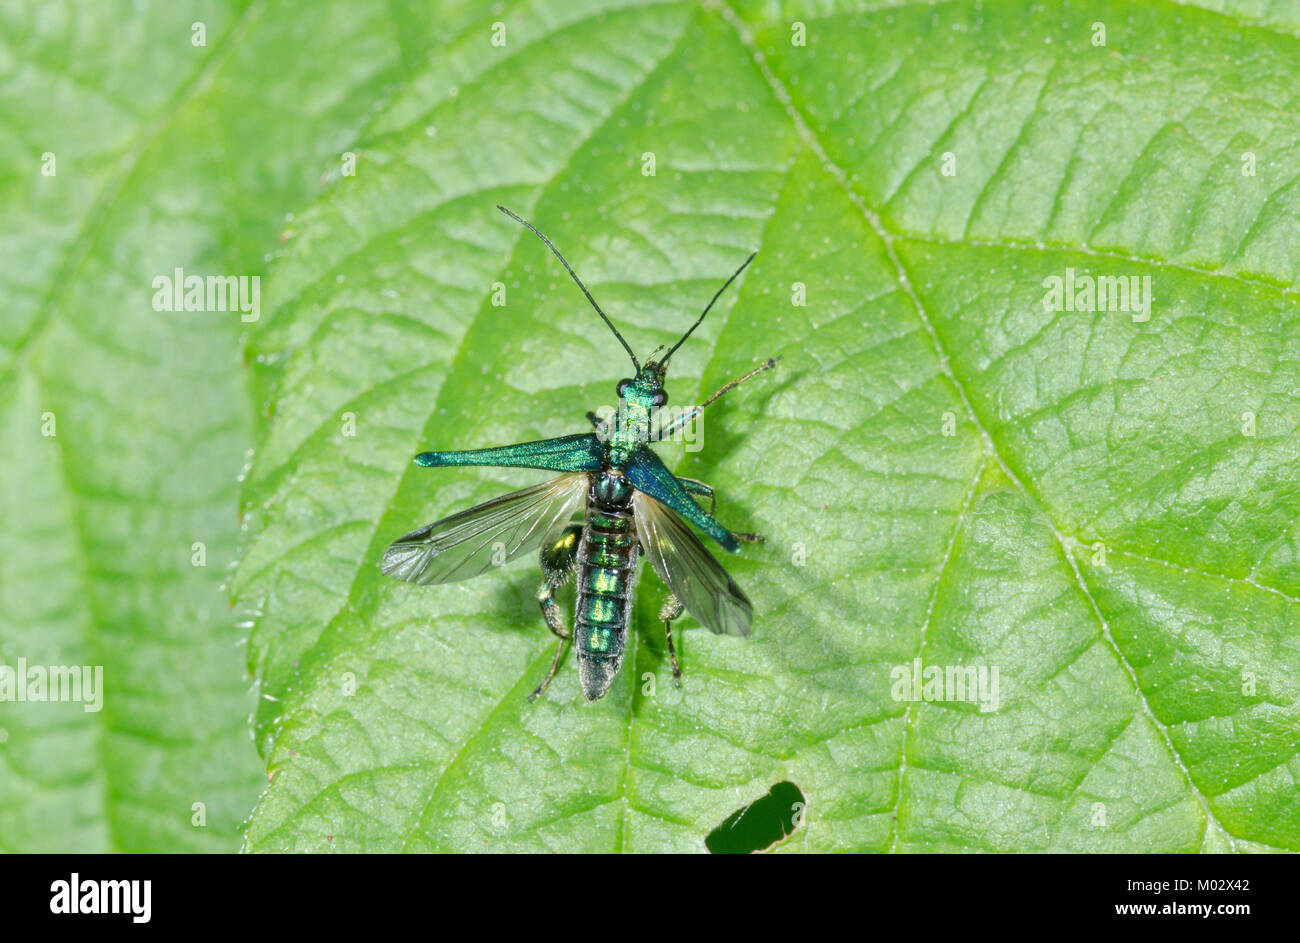 Flor de patas gruesas Escarabajo (Oedemera nobilis) macho de despegar. Insectos en vuelo. Sussex, UK Foto de stock